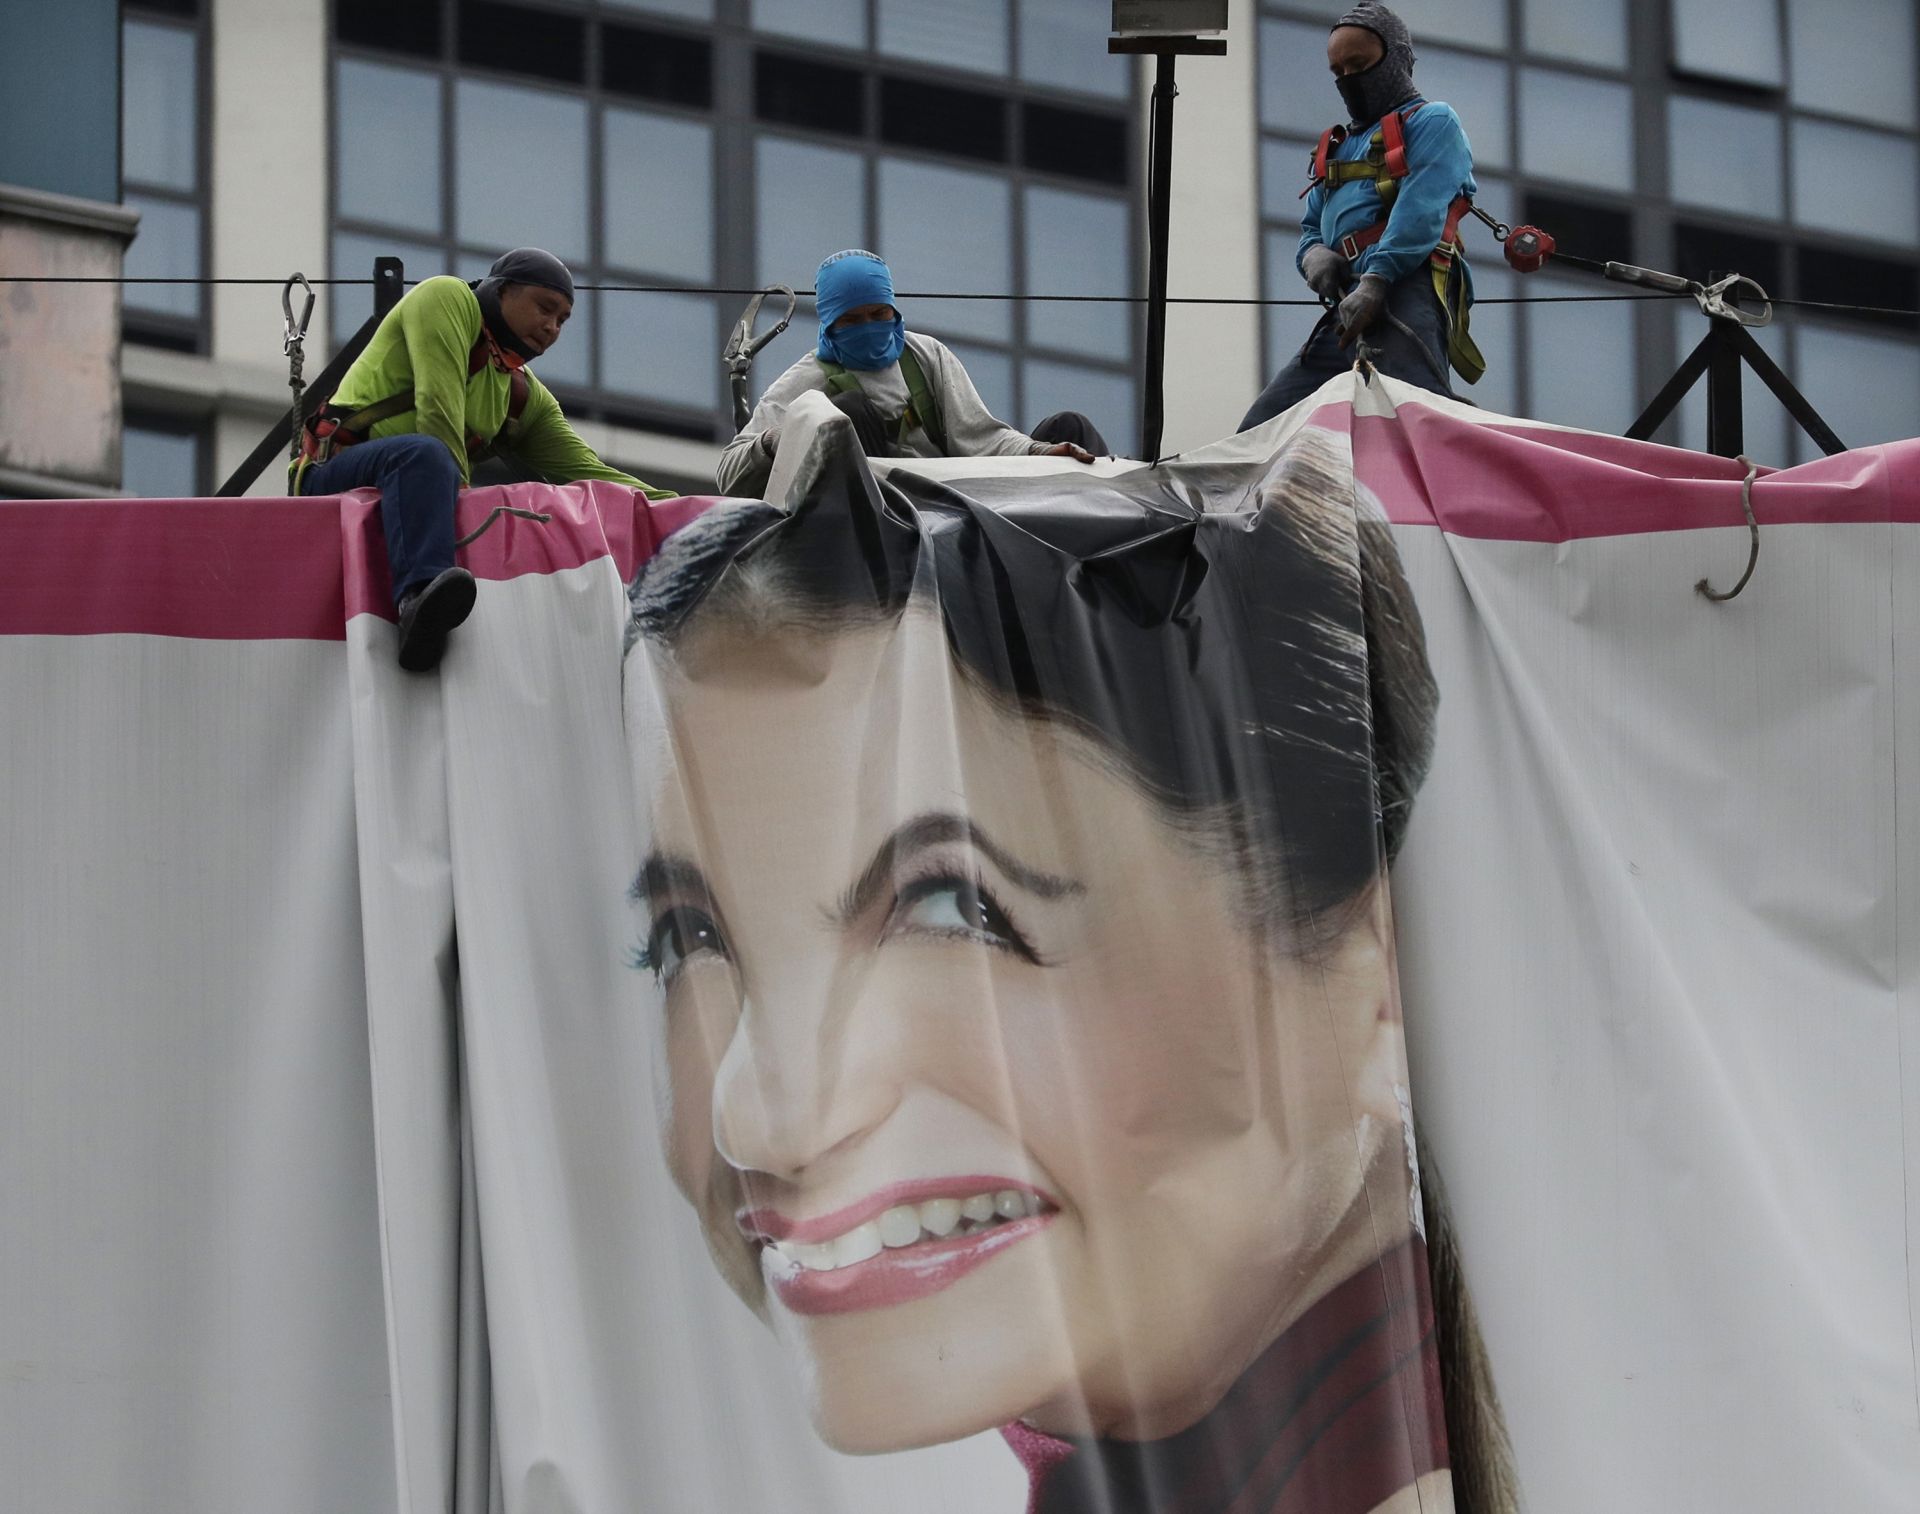 Работници махат огромен билборд, за да го спасят от мощния вятър